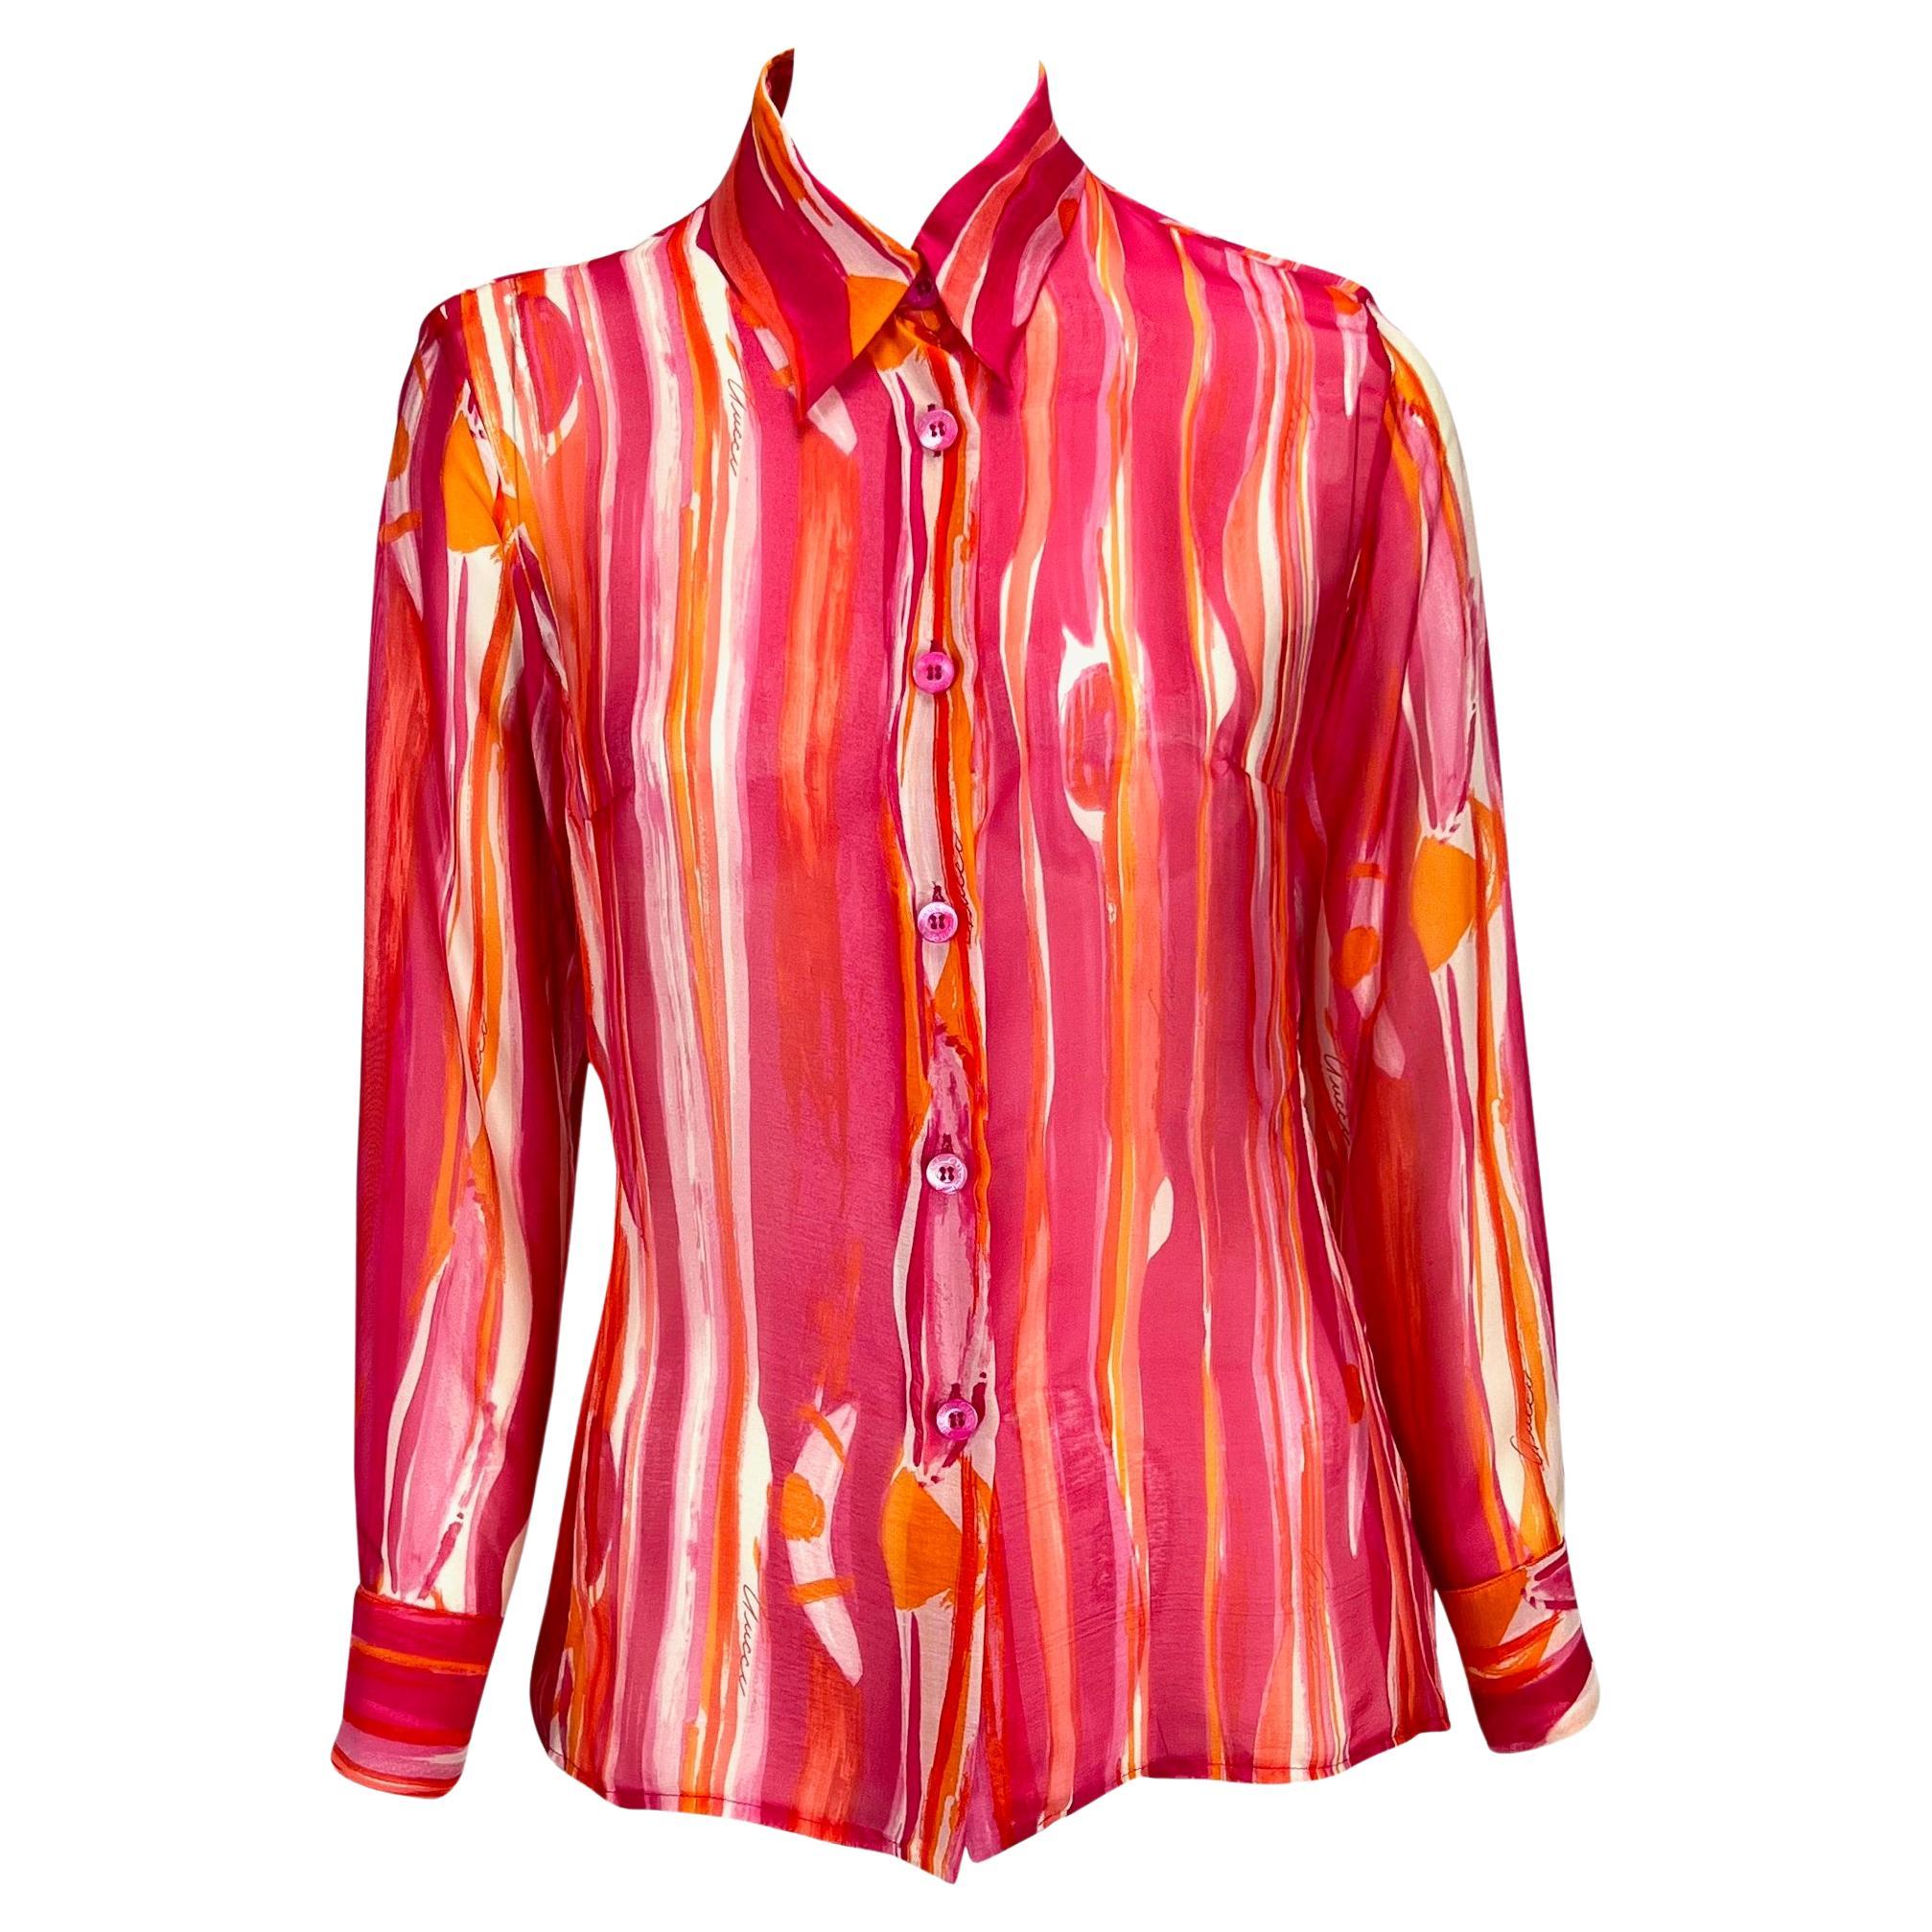 Haut boutonné Gucci par Tom Ford, rose orange transparent, aquarelle abstraite, P/E 1996